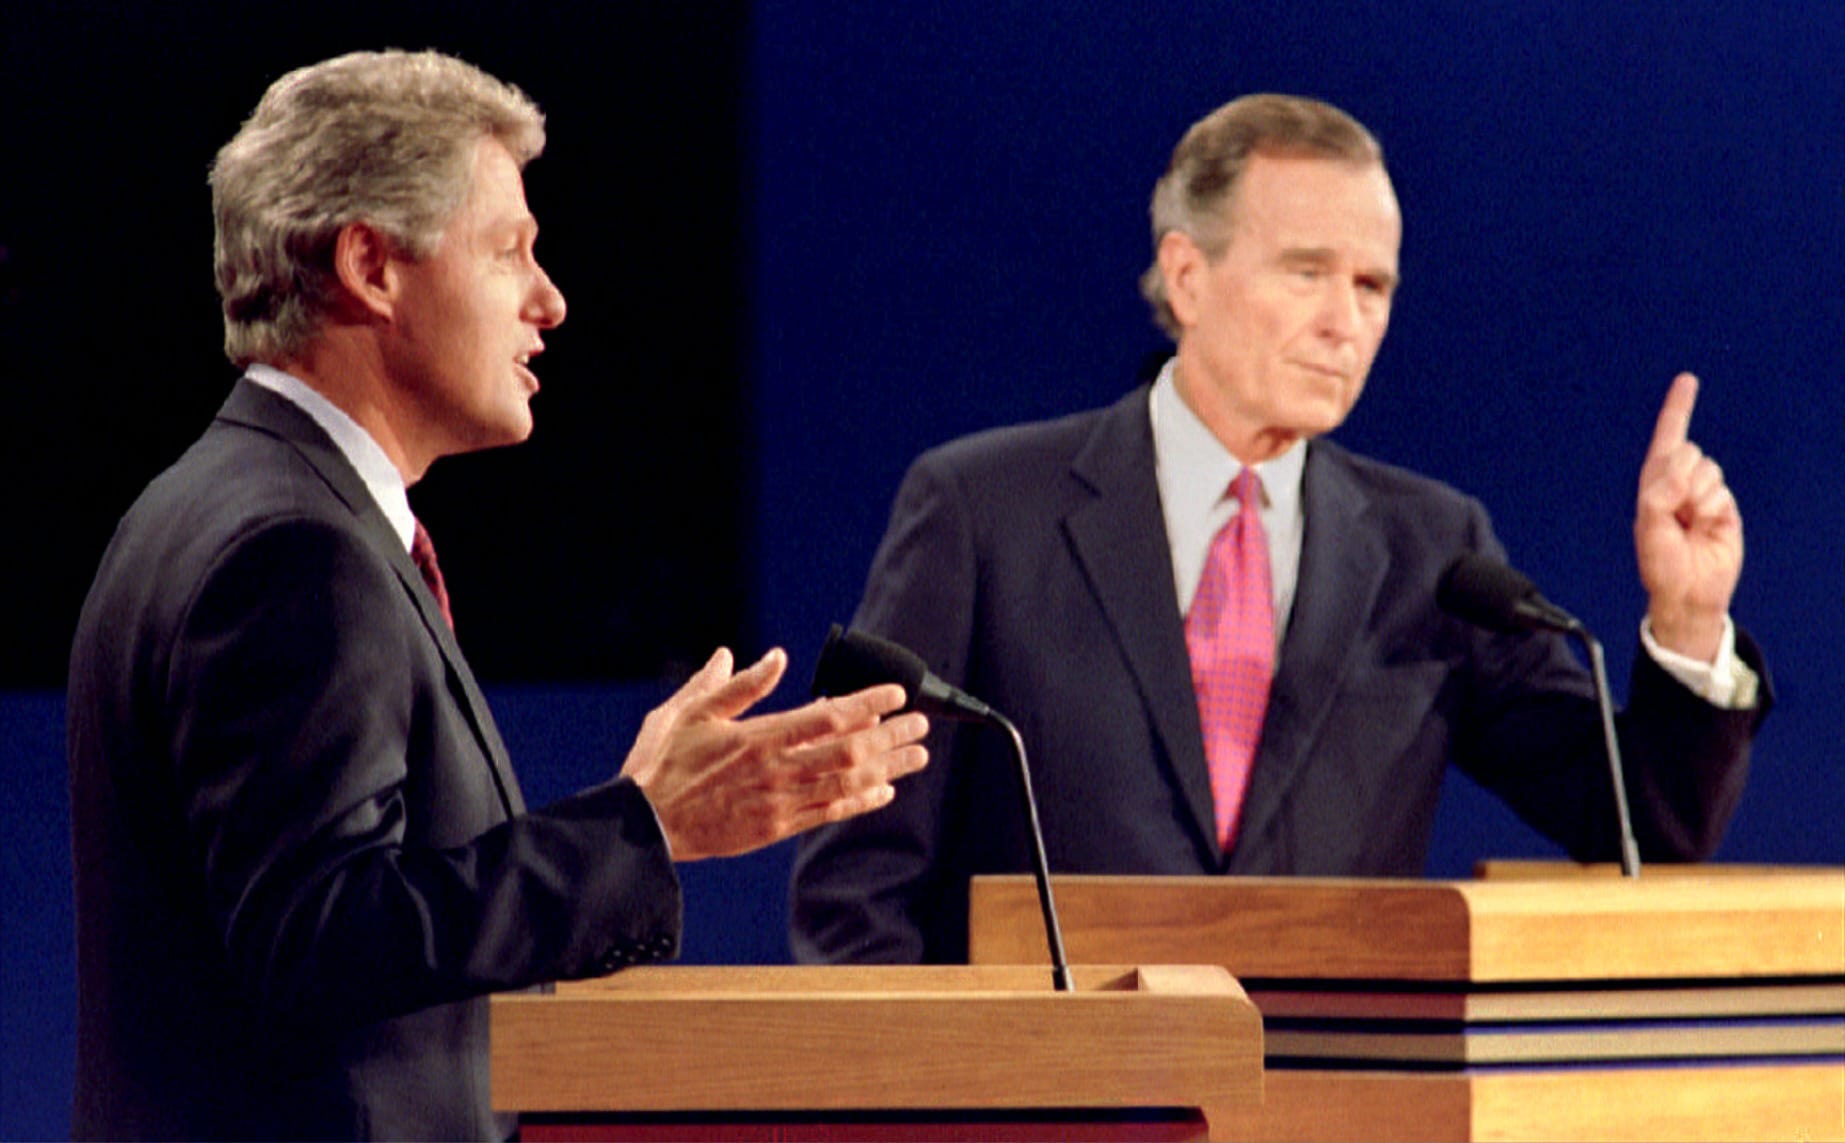 "Es ist die Wirtschaft, Dummkopf!": Daheim überschatten Schuldenkrise und Rezession den Wahlkampf 1992. Gegen den jugendlichen Herausforderer Bill Clinton wirkt Bush plötzlich ohne Rezept und von gestern, so ist auch der Eindruck bei dieser TV-Debatte im Oktober 1992. Bush wird nach nur einer Amtszeit abgewählt.